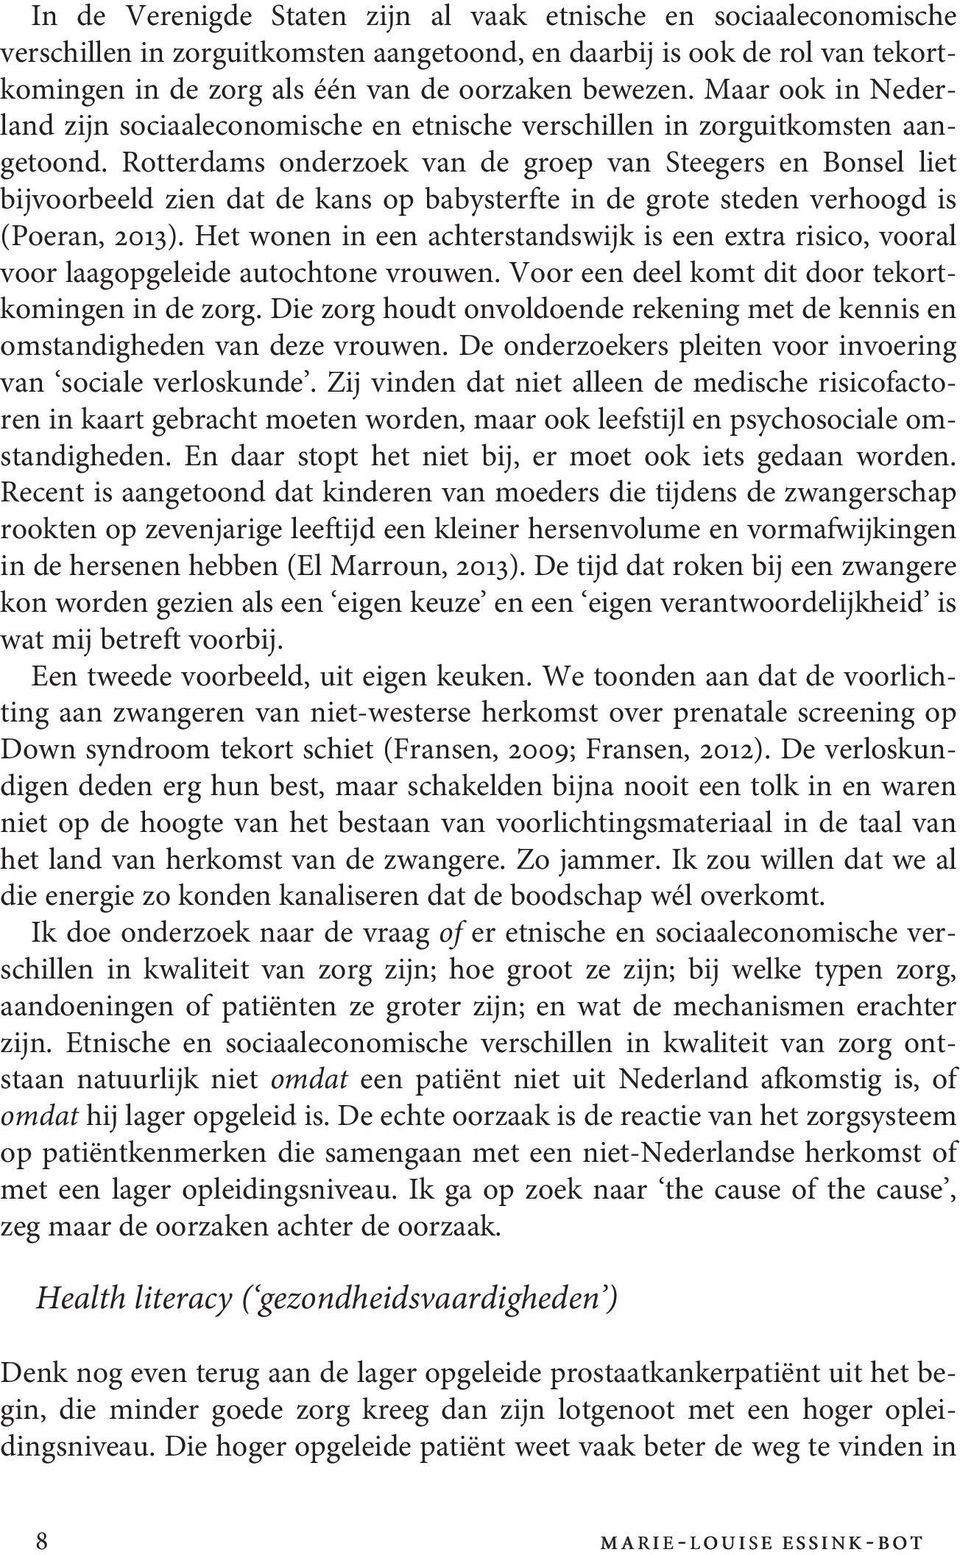 Rotterdams onderzoek van de groep van Steegers en Bonsel liet bijvoorbeeld zien dat de kans op babysterfte in de grote steden verhoogd is (Poeran, 2013).